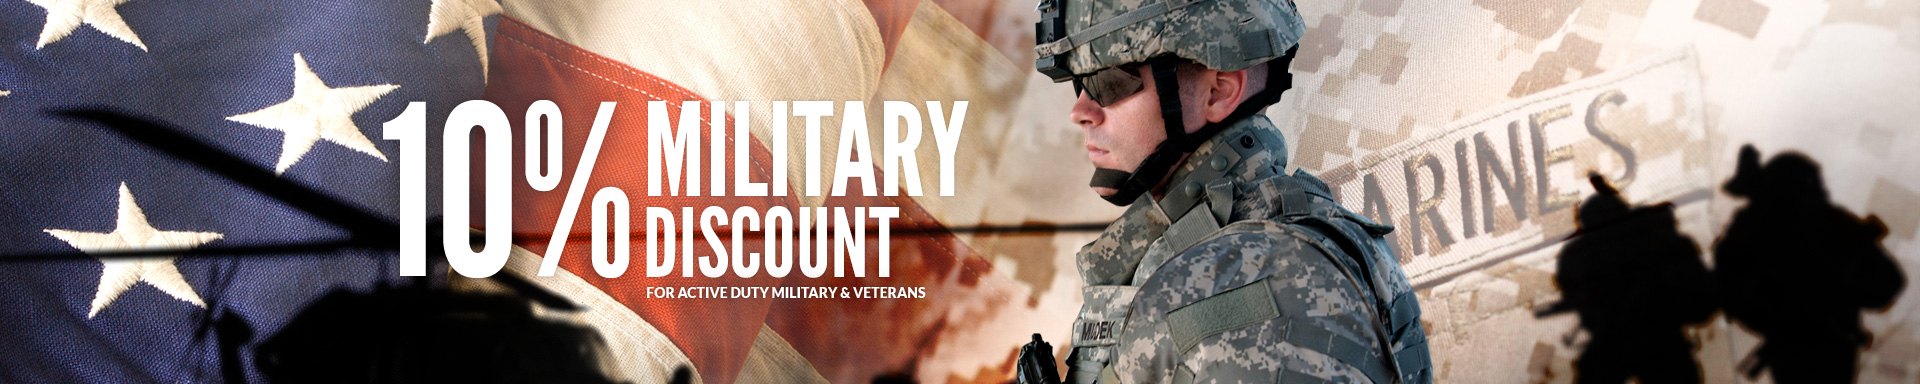 Military Discounts at TOOLSiD.com